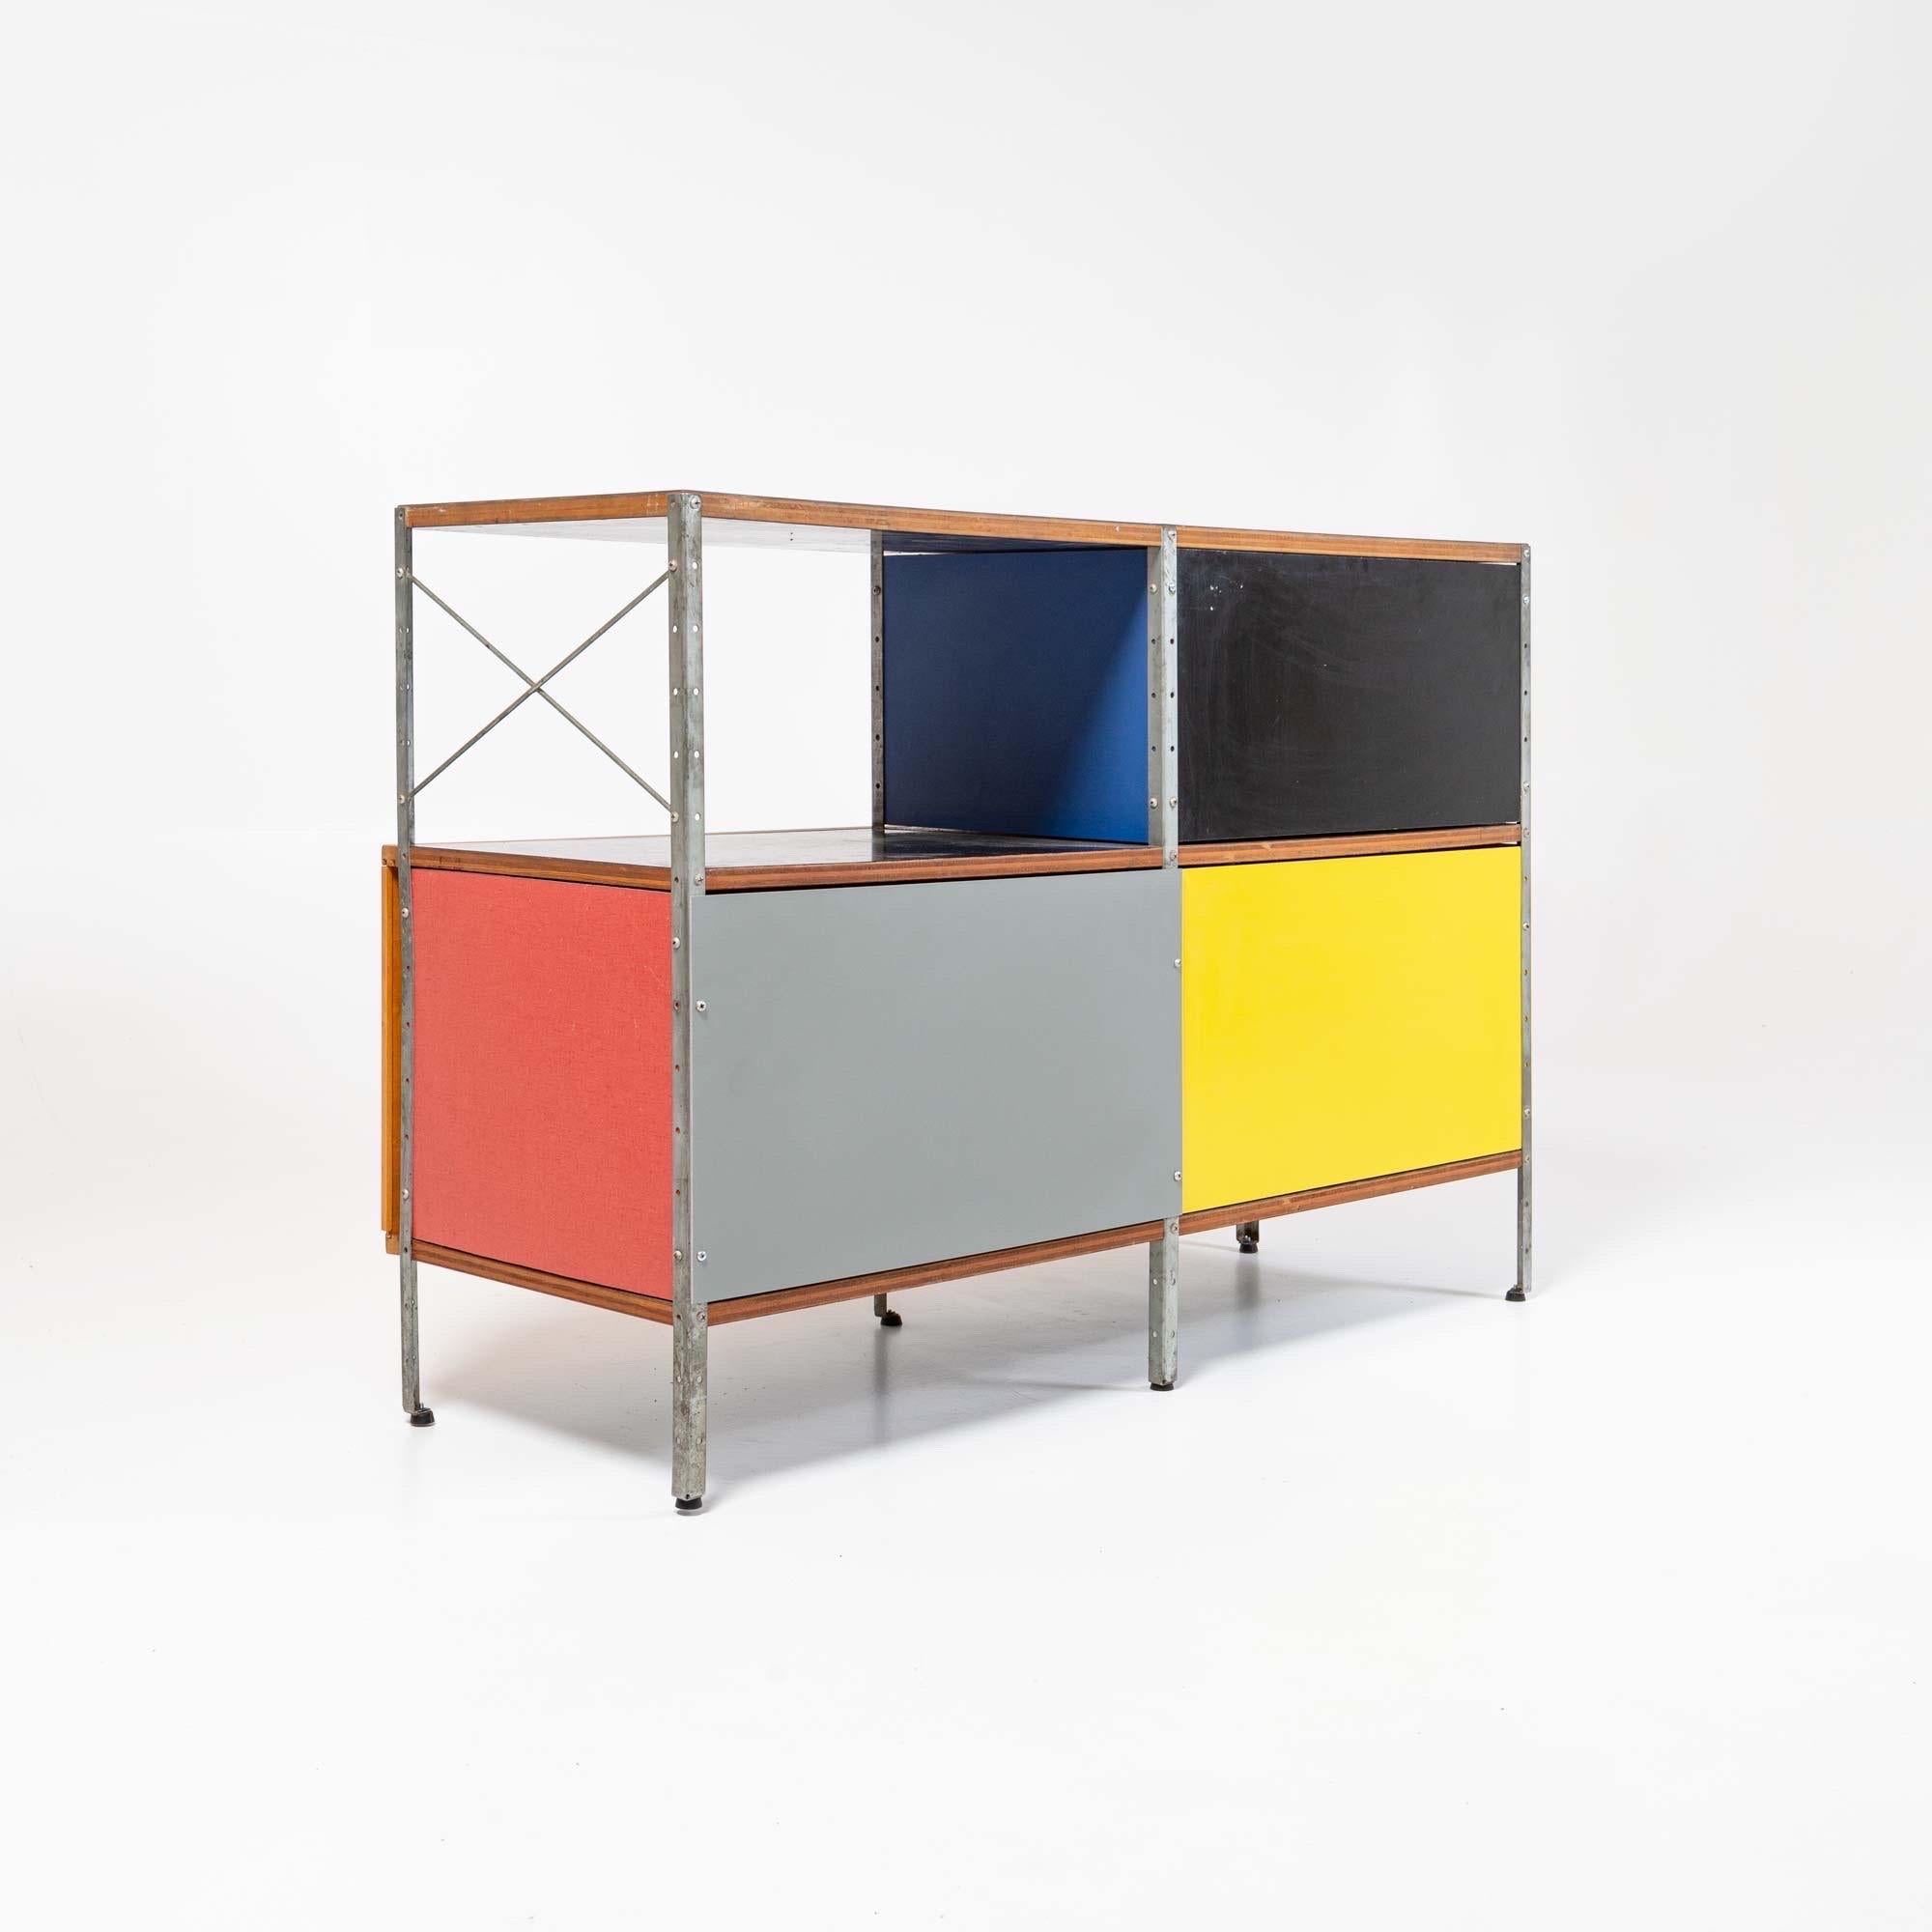 Design emblématique de Charles et Ray Eames pour Herman Miller, les étagères Eames, ou ESU en abrégé, ont récemment atteint un nouveau niveau de collectionnabilité en raison de la rareté, en particulier de la première génération, produite en